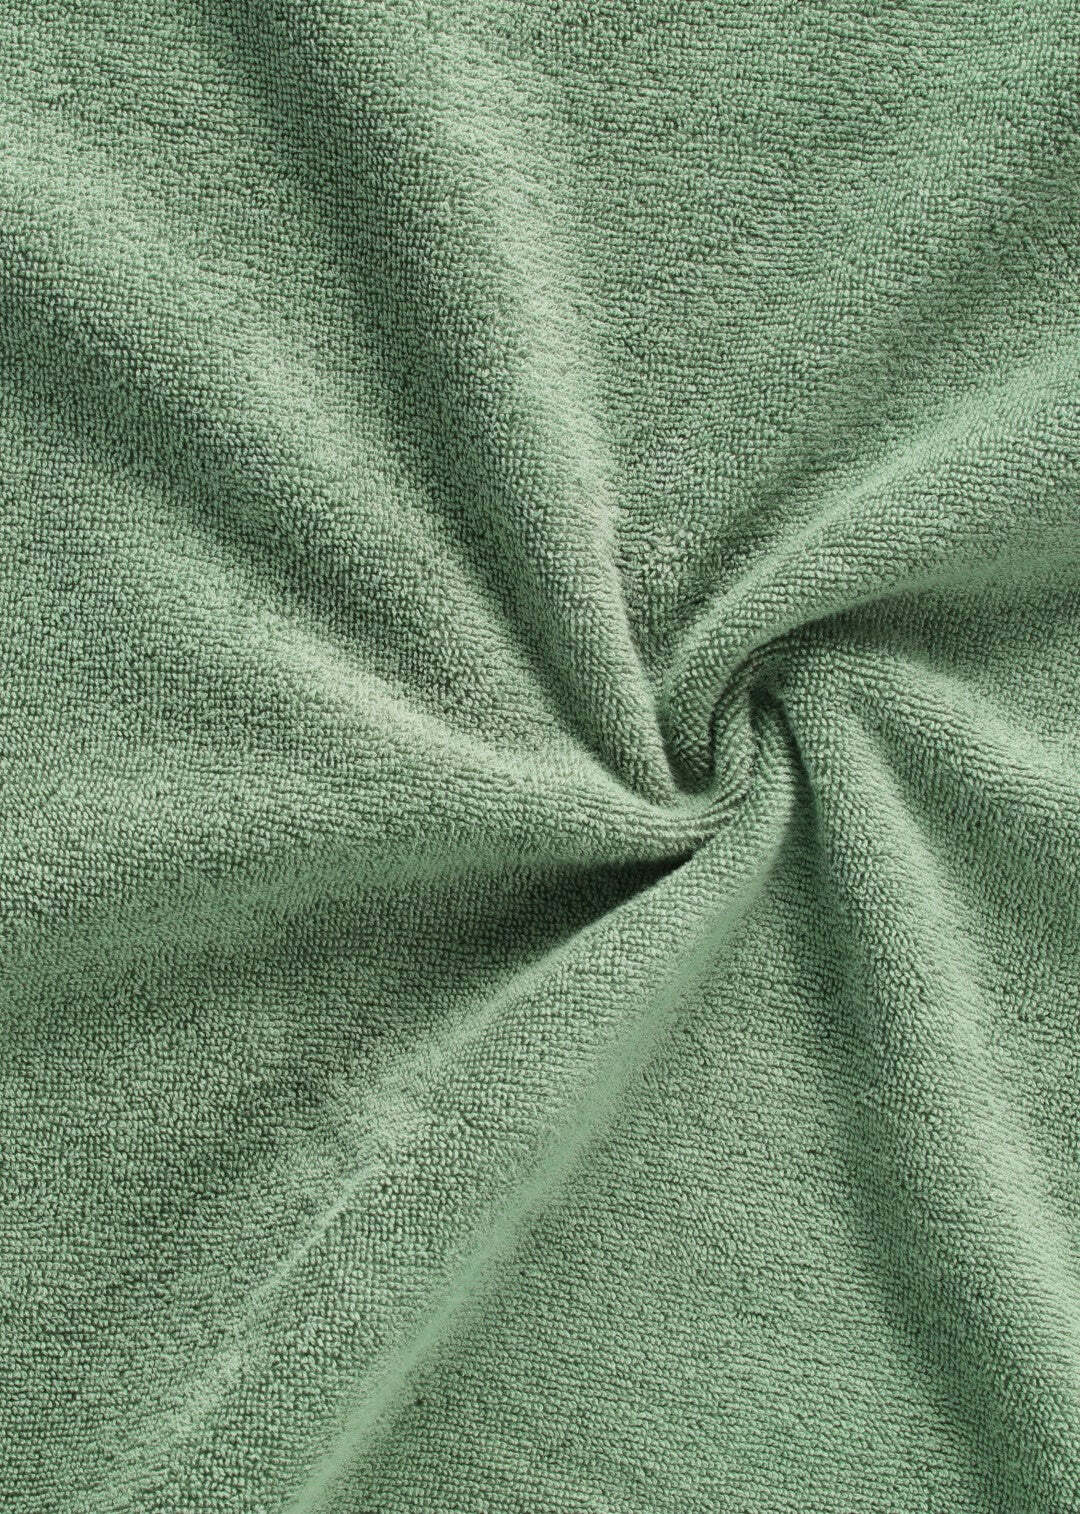 Handtuch Baumwolle Dunkelgrün 30 x 50 cm 1